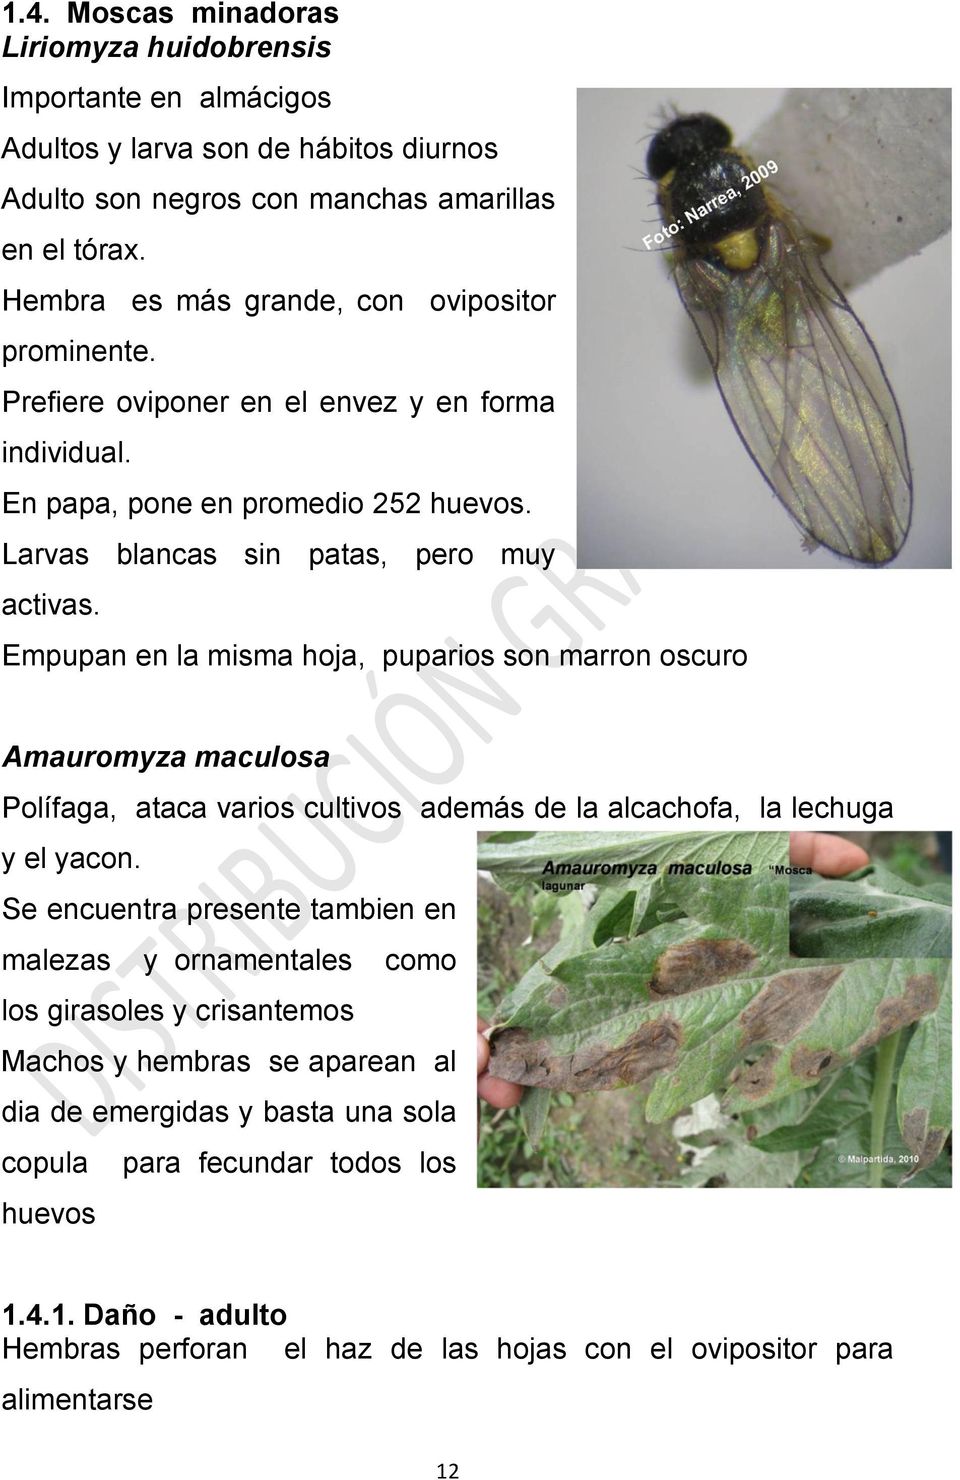 Empupan en la misma hoja, puparios son marron oscuro Amauromyza maculosa Polífaga, ataca varios cultivos además de la alcachofa, la lechuga y el yacon.